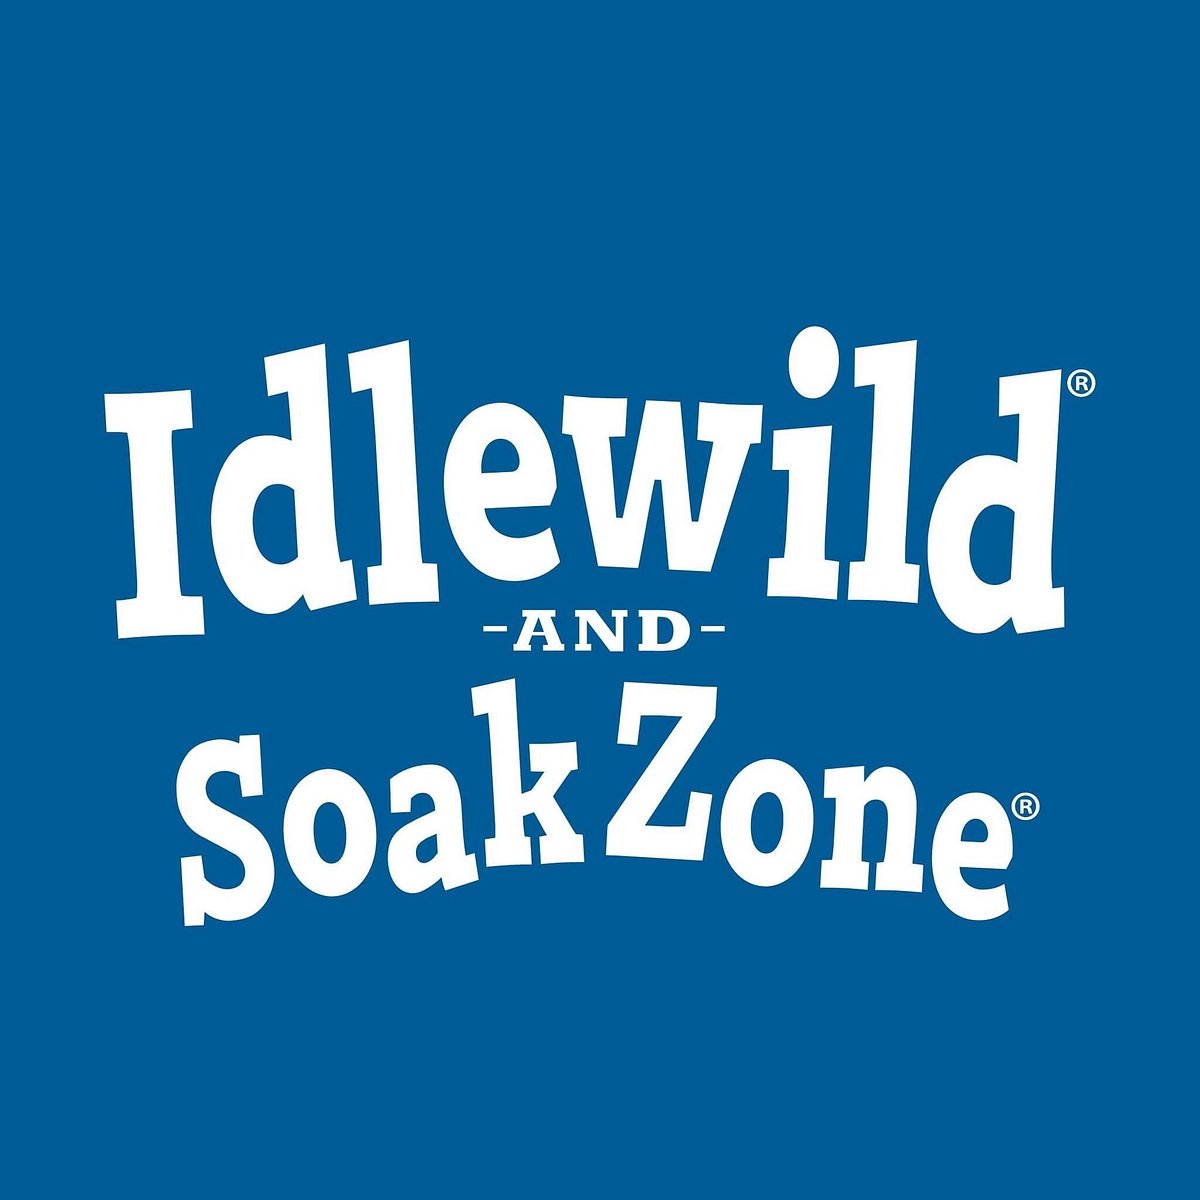 Idlewild: Pennsylvania's Mountain Playground